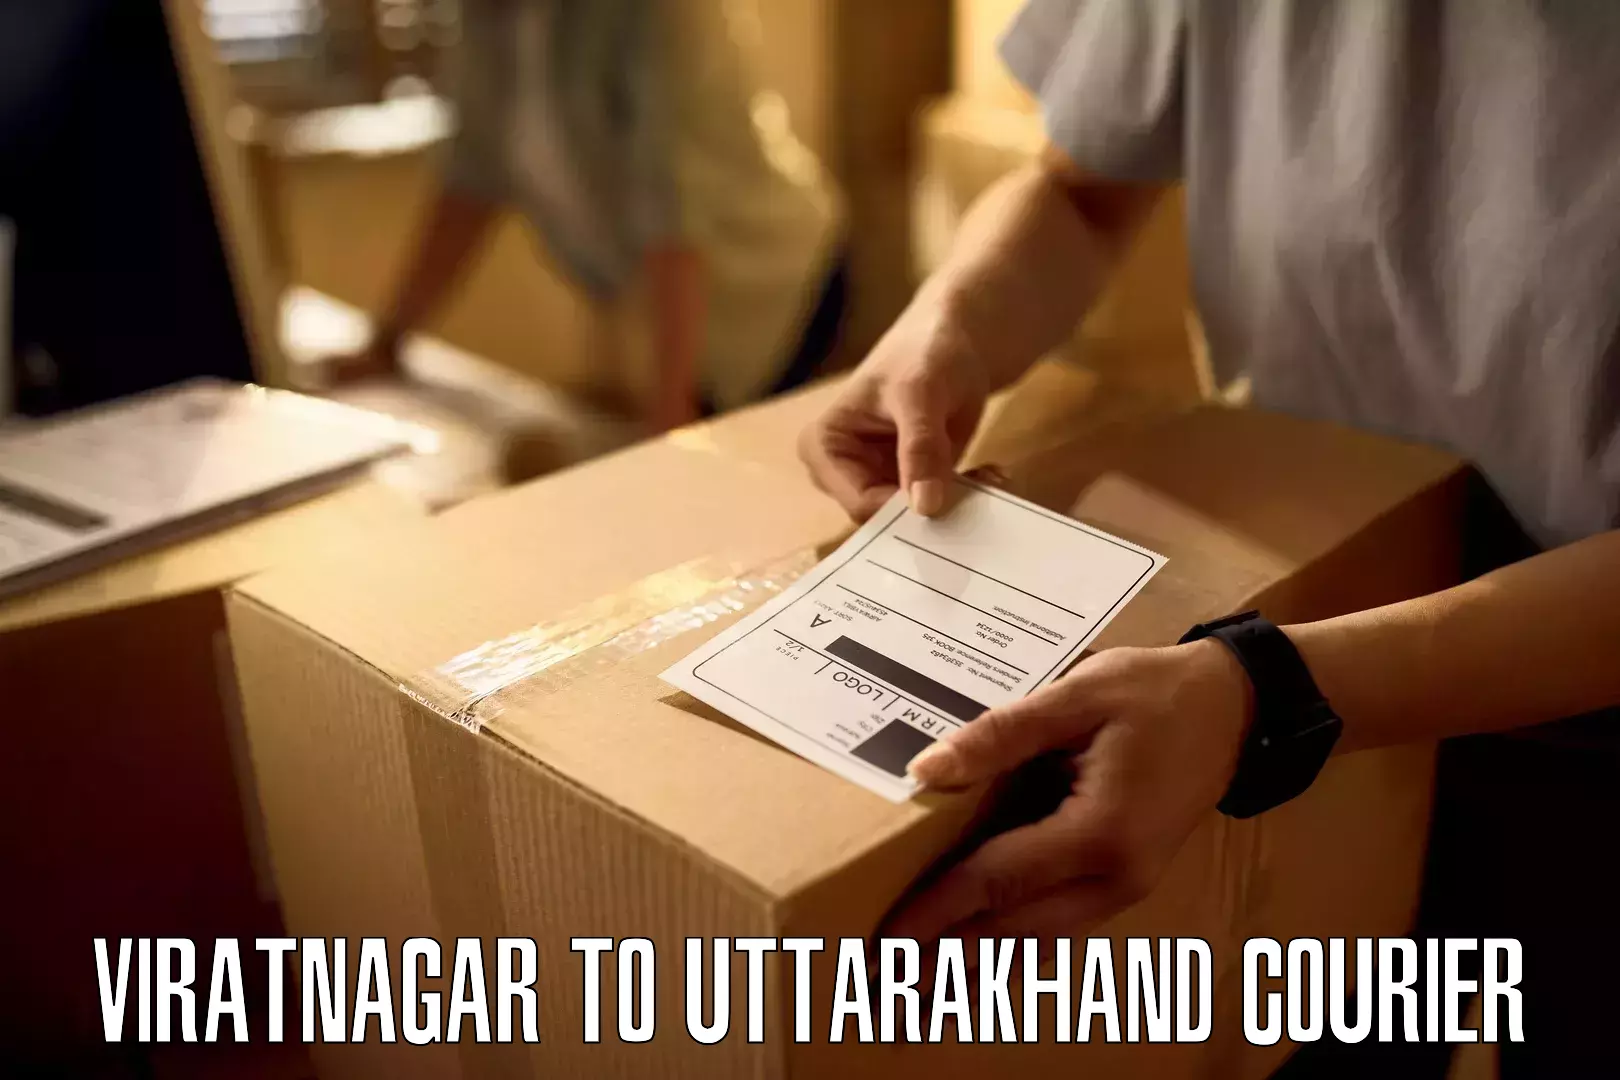 Urban courier service Viratnagar to Almora